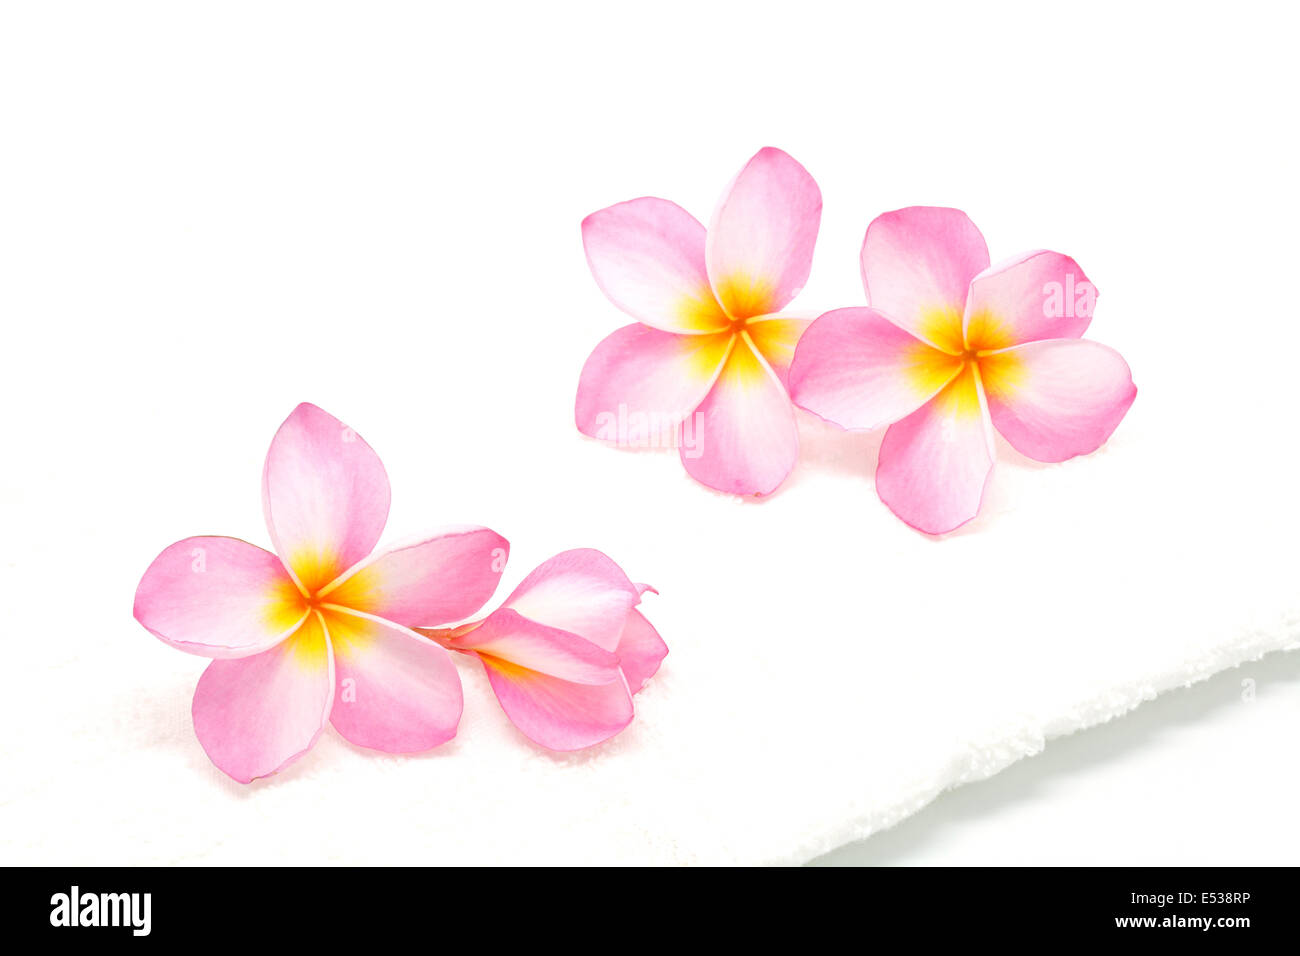 Rosa Plumeria fiore con un asciugamano bianco in condizione di spa Foto Stock